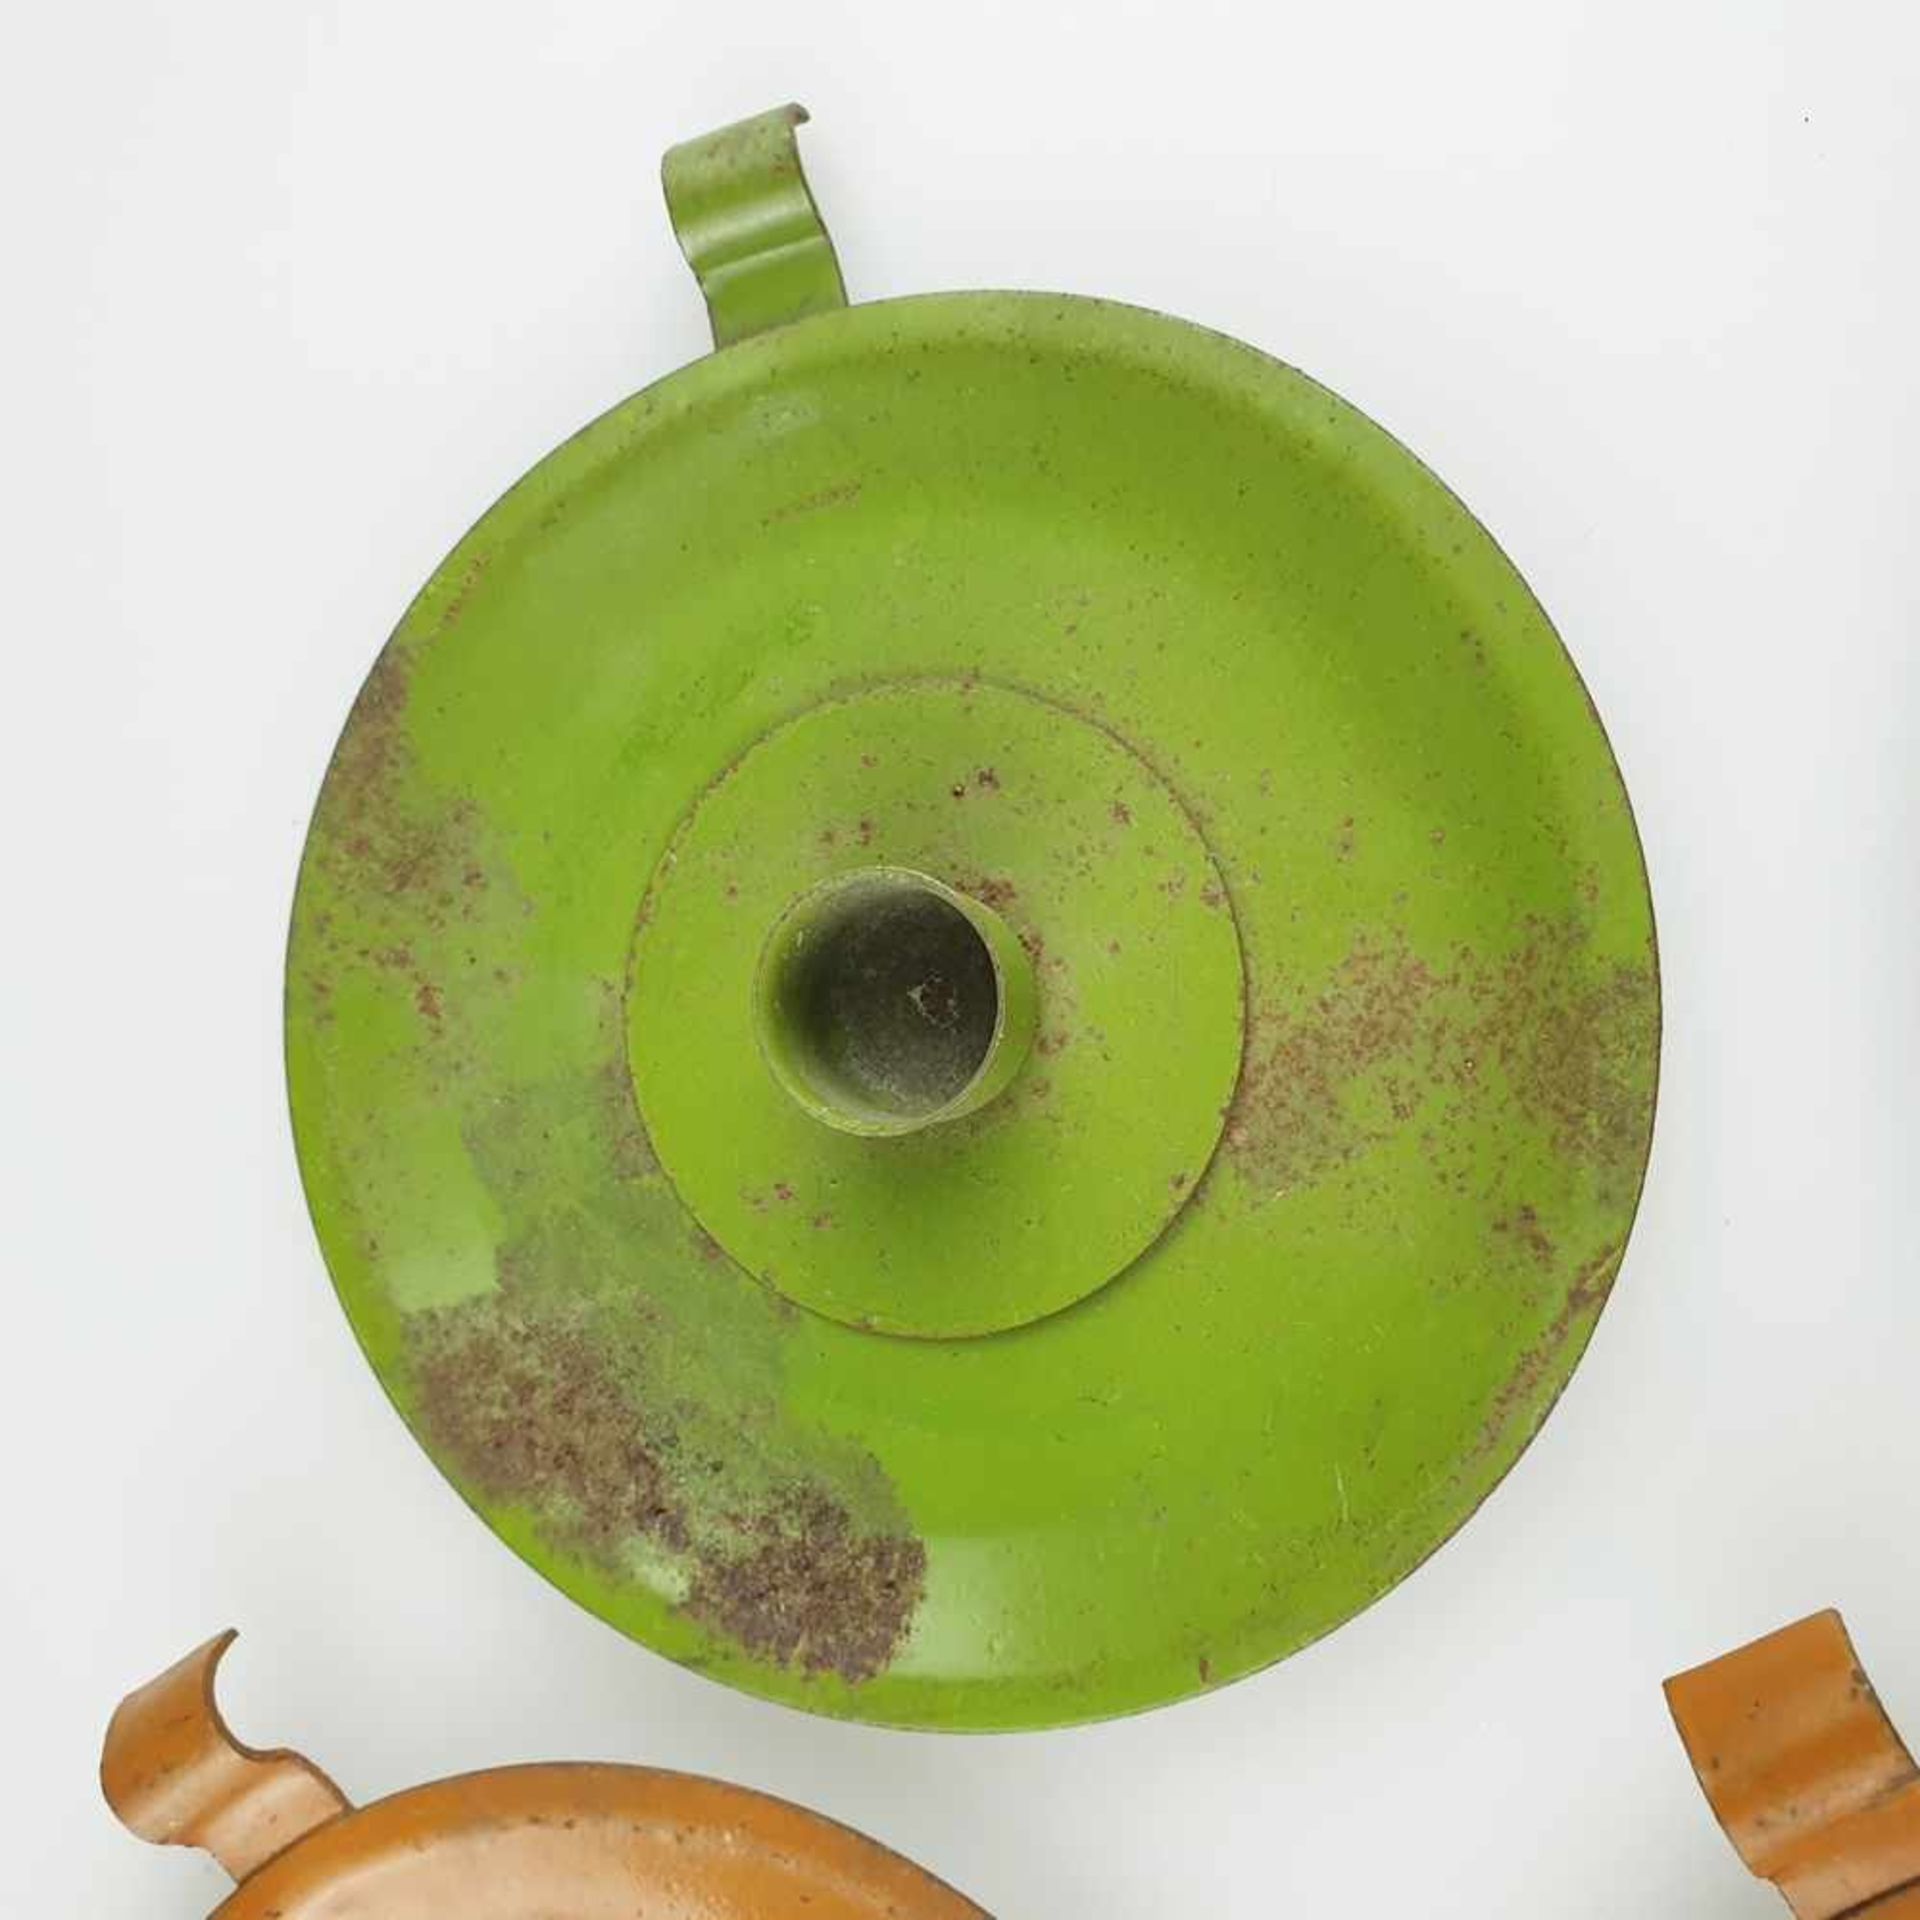 Vier Kerzenhalter - Metall, 2 grün / 2 orange gefasst, runde Form mit zylindrischer Kerzentülle - Bild 4 aus 7